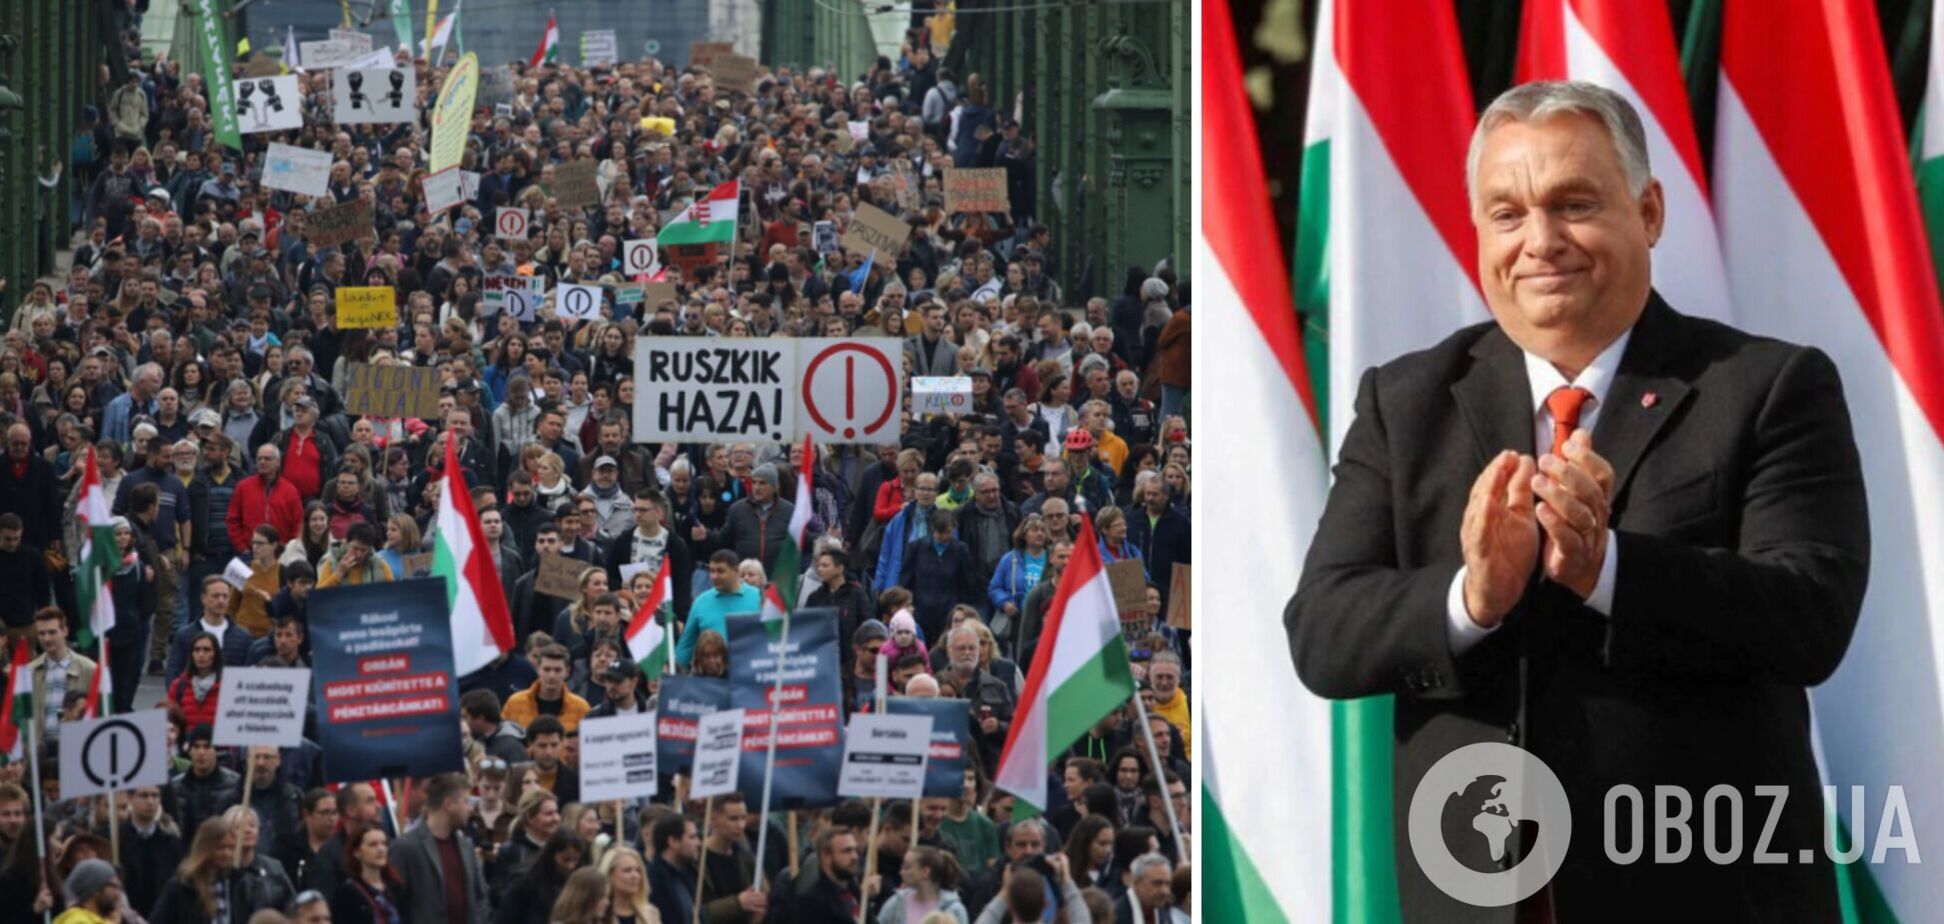 В Венгрии устроили масштабные протесты против правительства друга Путина Орбана. Фото